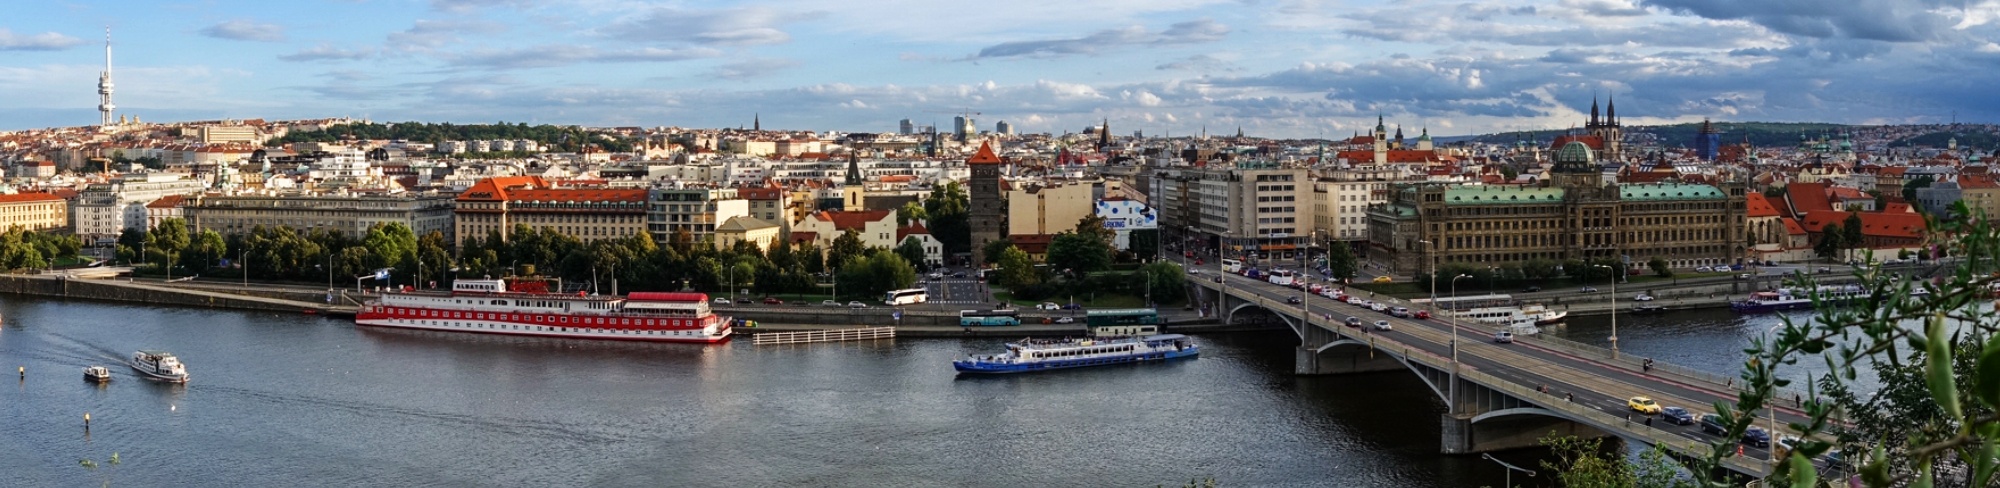 Prague Slide 2.jpg